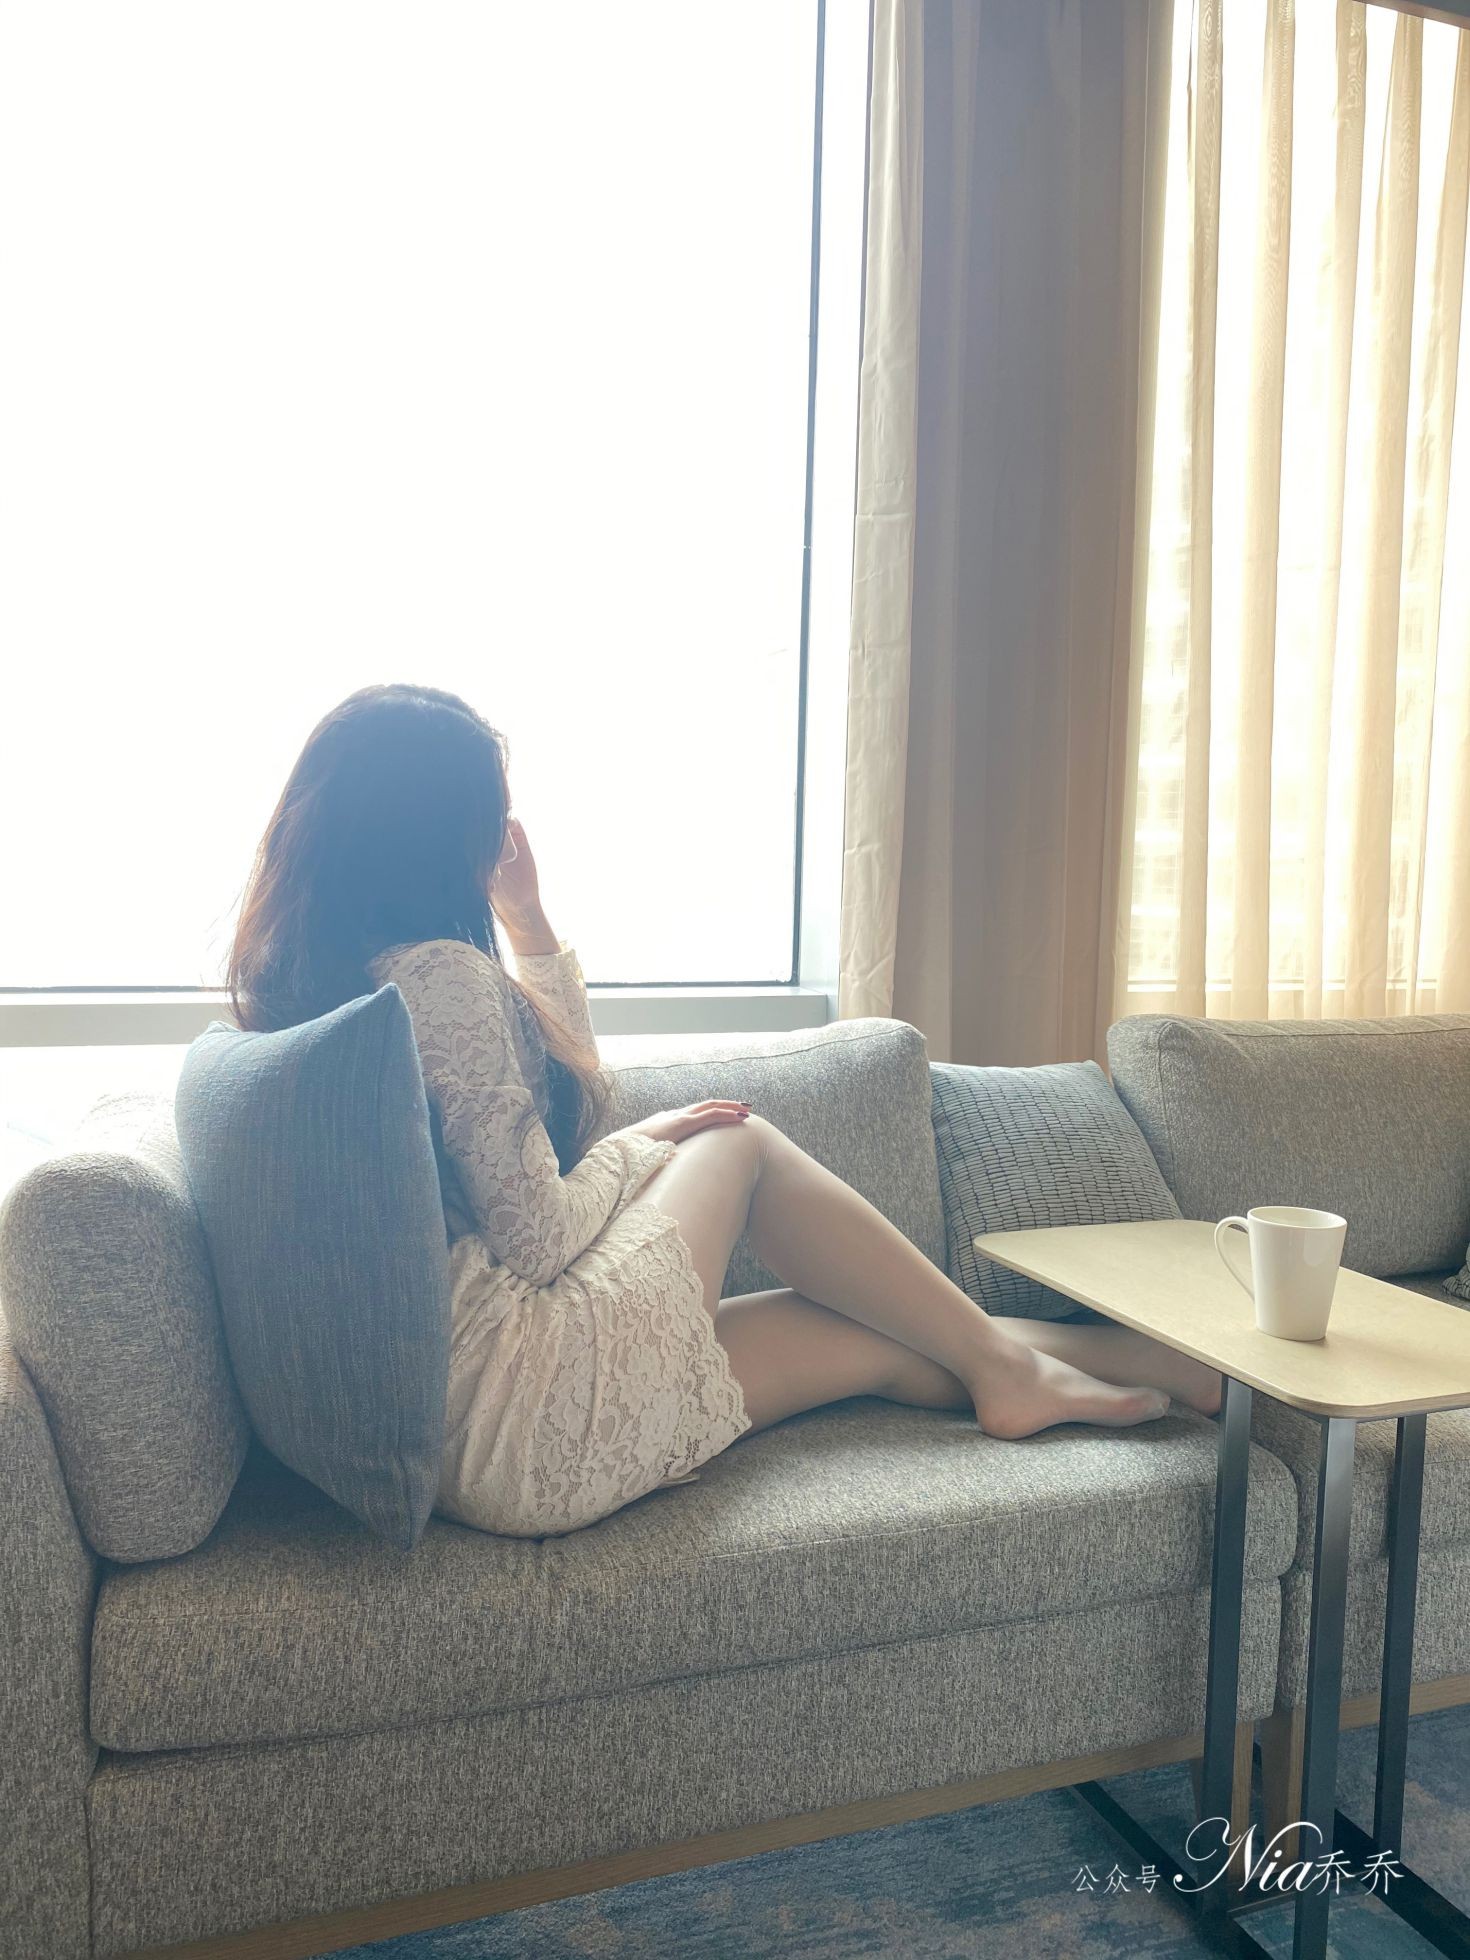 Nia乔乔美女网红性感自拍私摄写真图片家有娇妻蕾丝包臀裙美腿 (27)